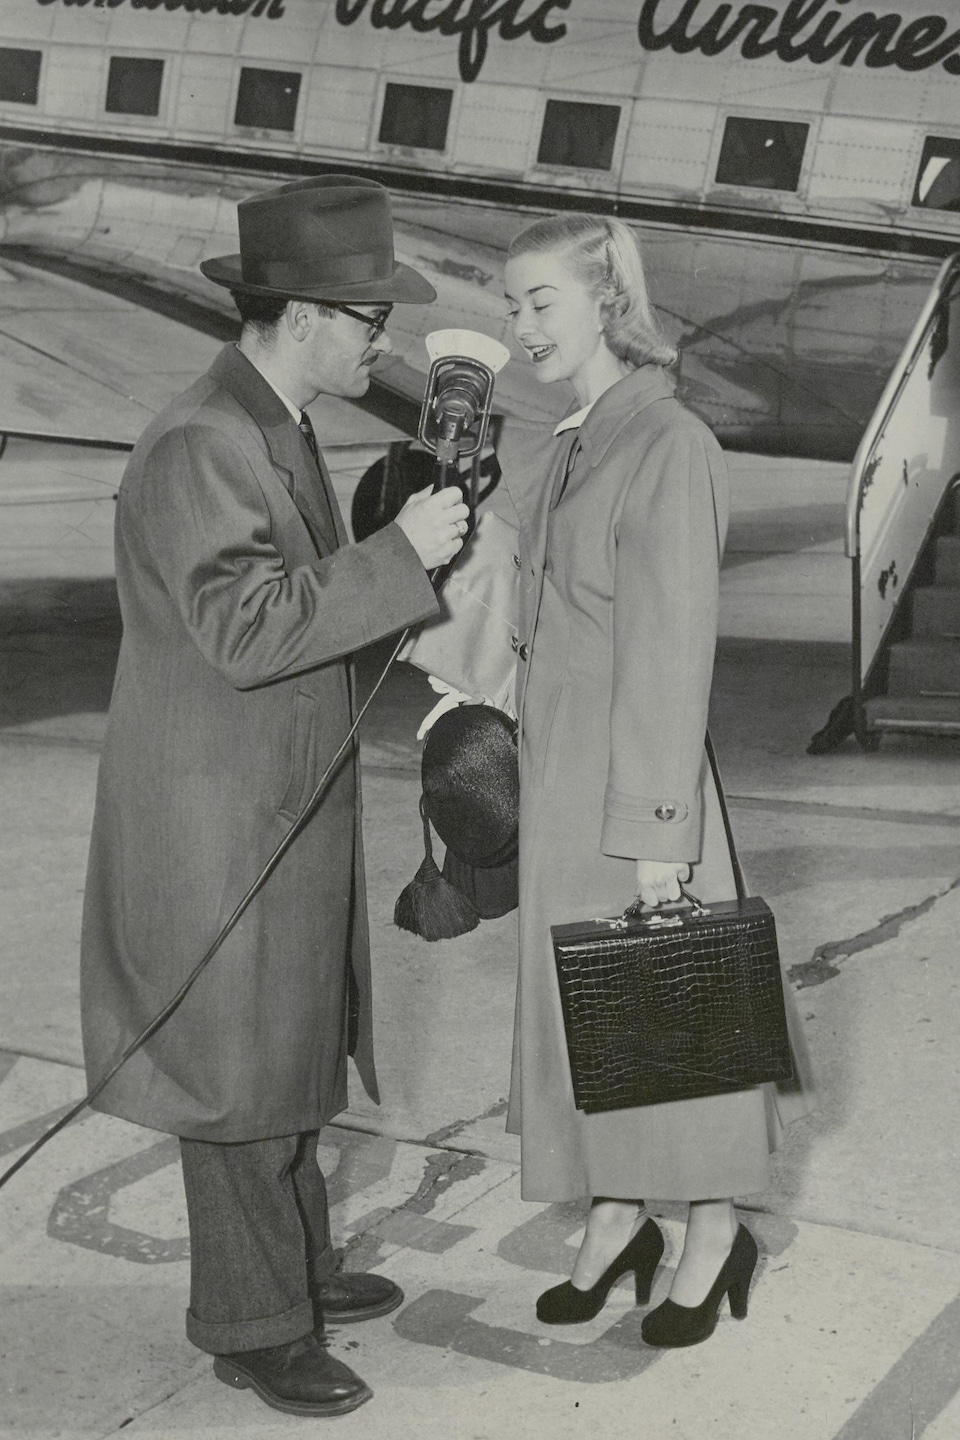 Barbara Ann Scott et Lionel Morin avec son micro sur le tarmac avec un avion en arrière-plan.